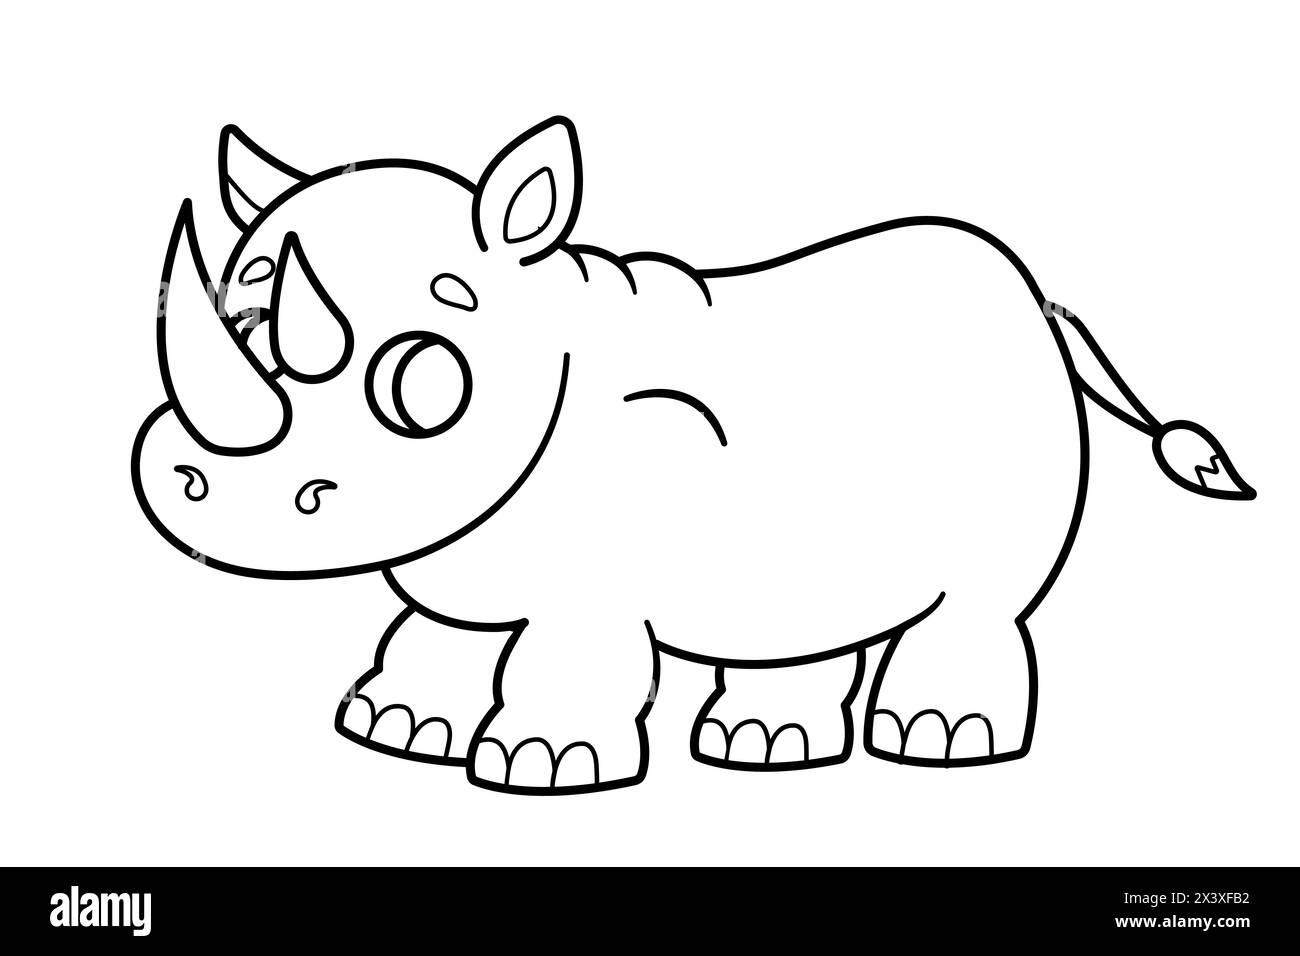 Cute cartoon rhinoceros. Coloring page, coloring book. Vector illustration. Stock Vector